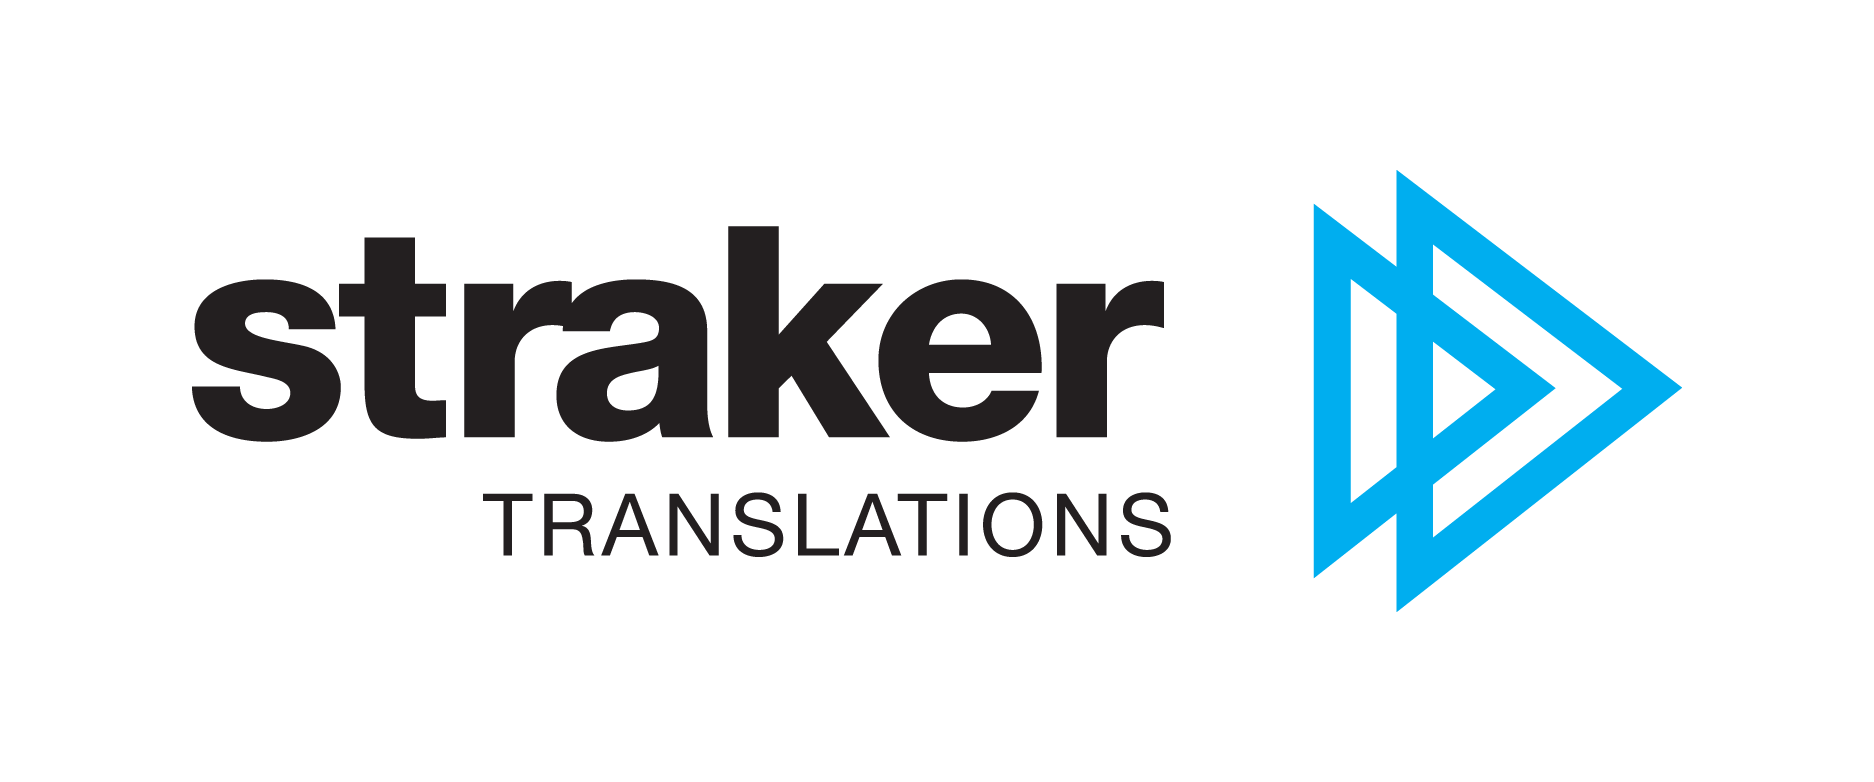 Translation Logo - Translate Logos